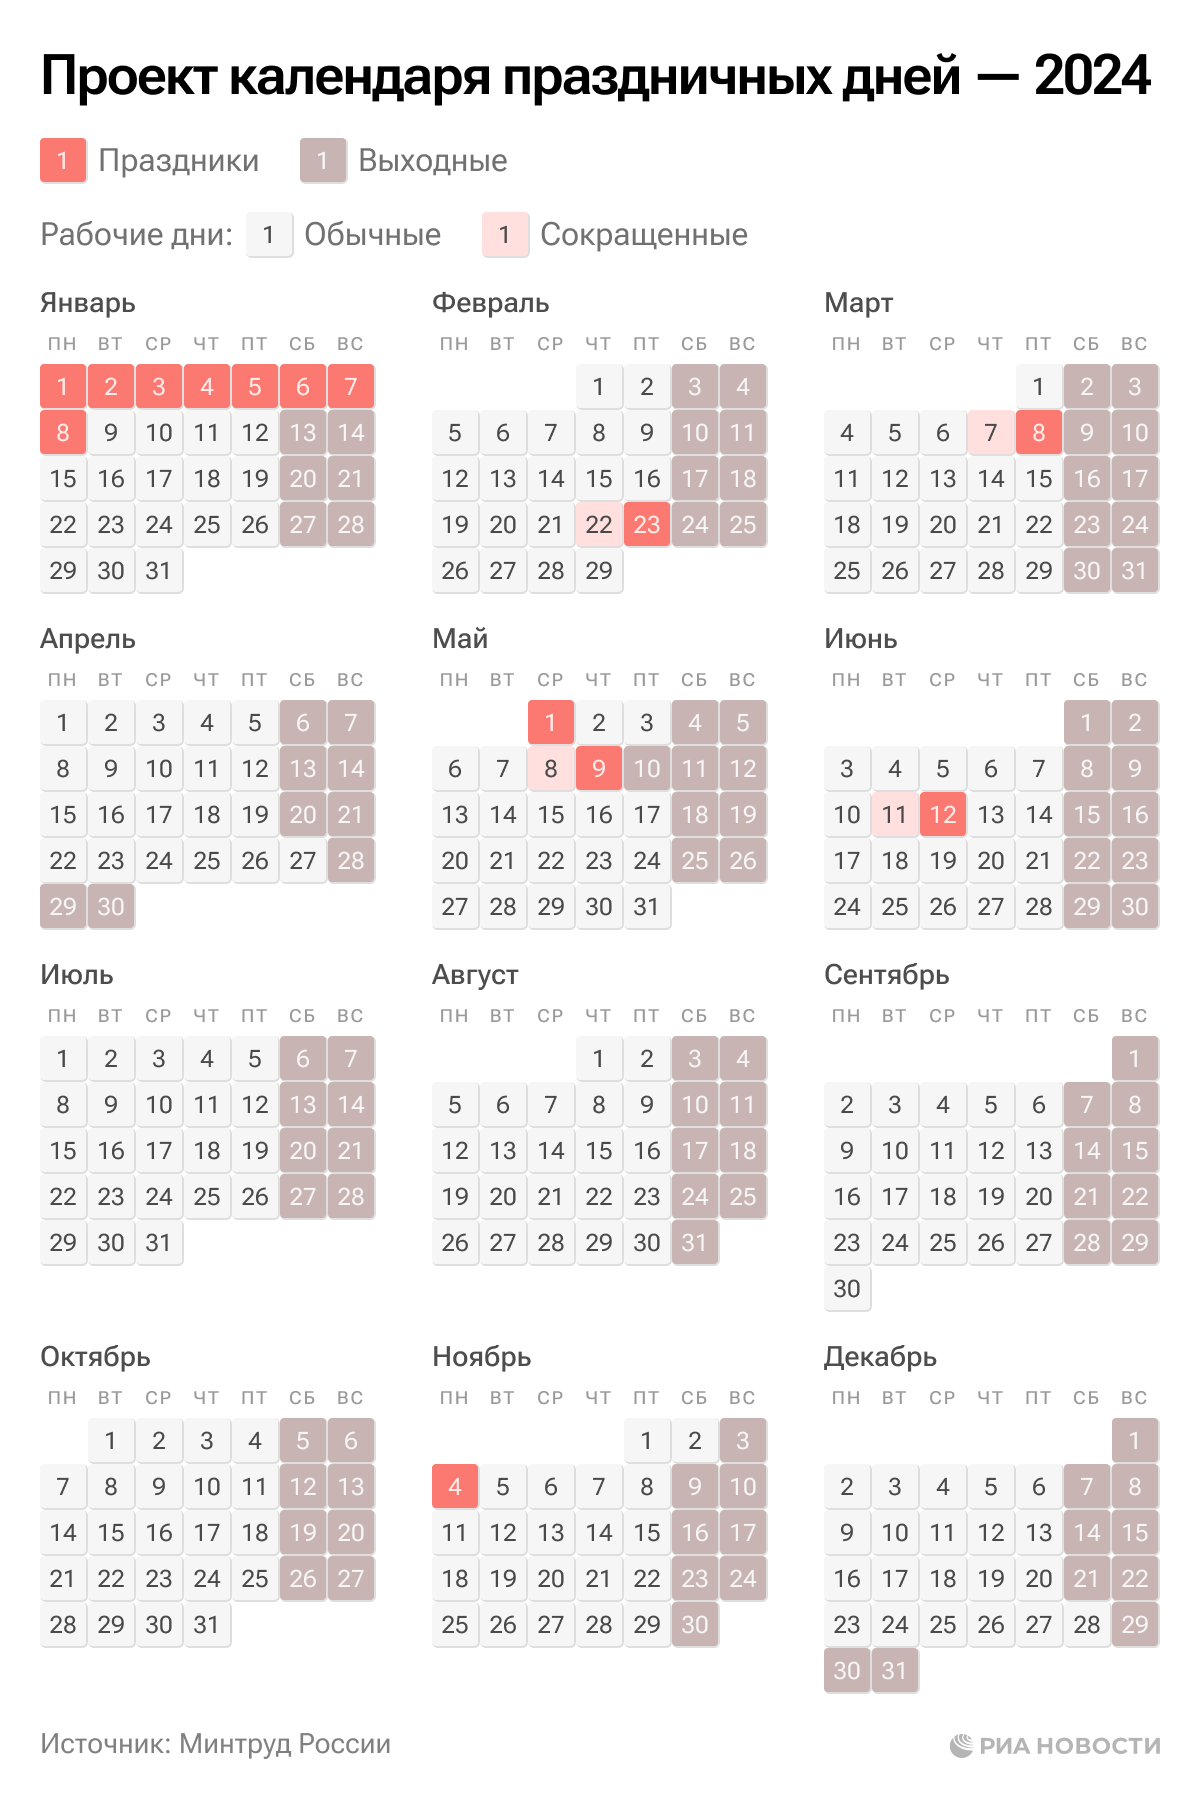 Норма января 2024 года. Календарь праздников. Календарь выходных. Календарь рабочих дней. График праздничных нерабочих дней в 2024.